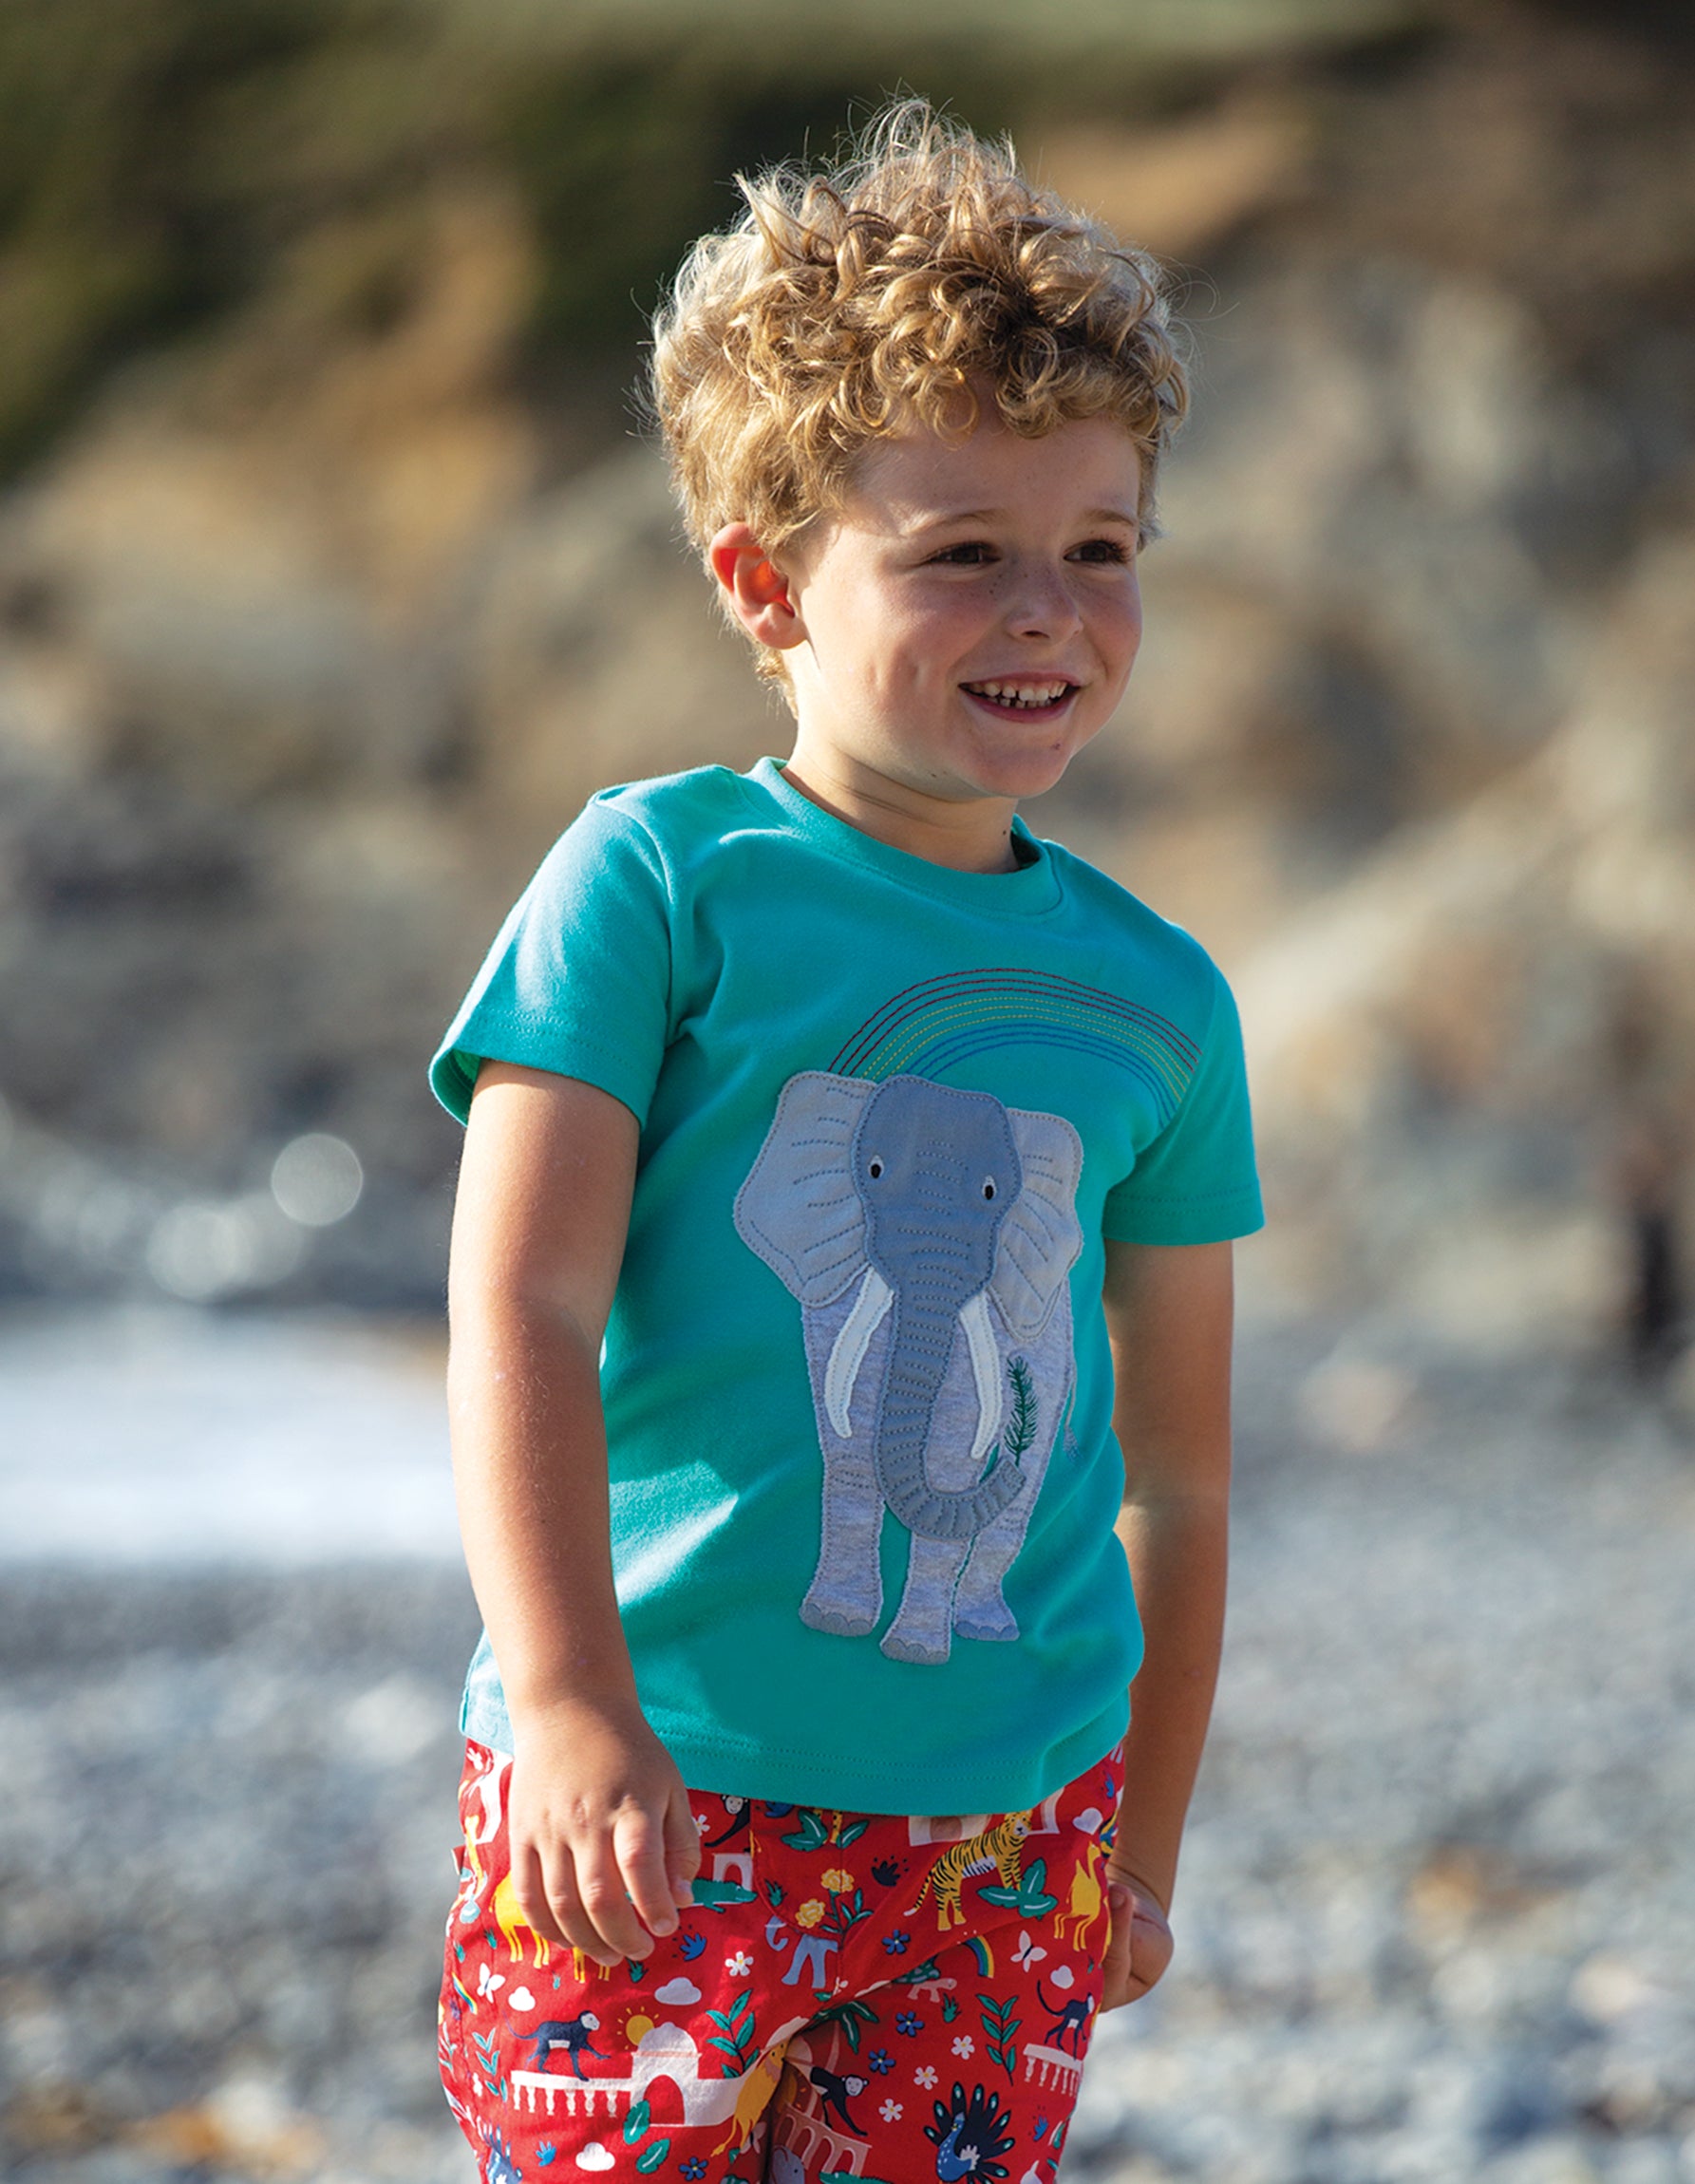 Frugi Carsen Applique T-Shirt - Pacific Aqua/Elephant